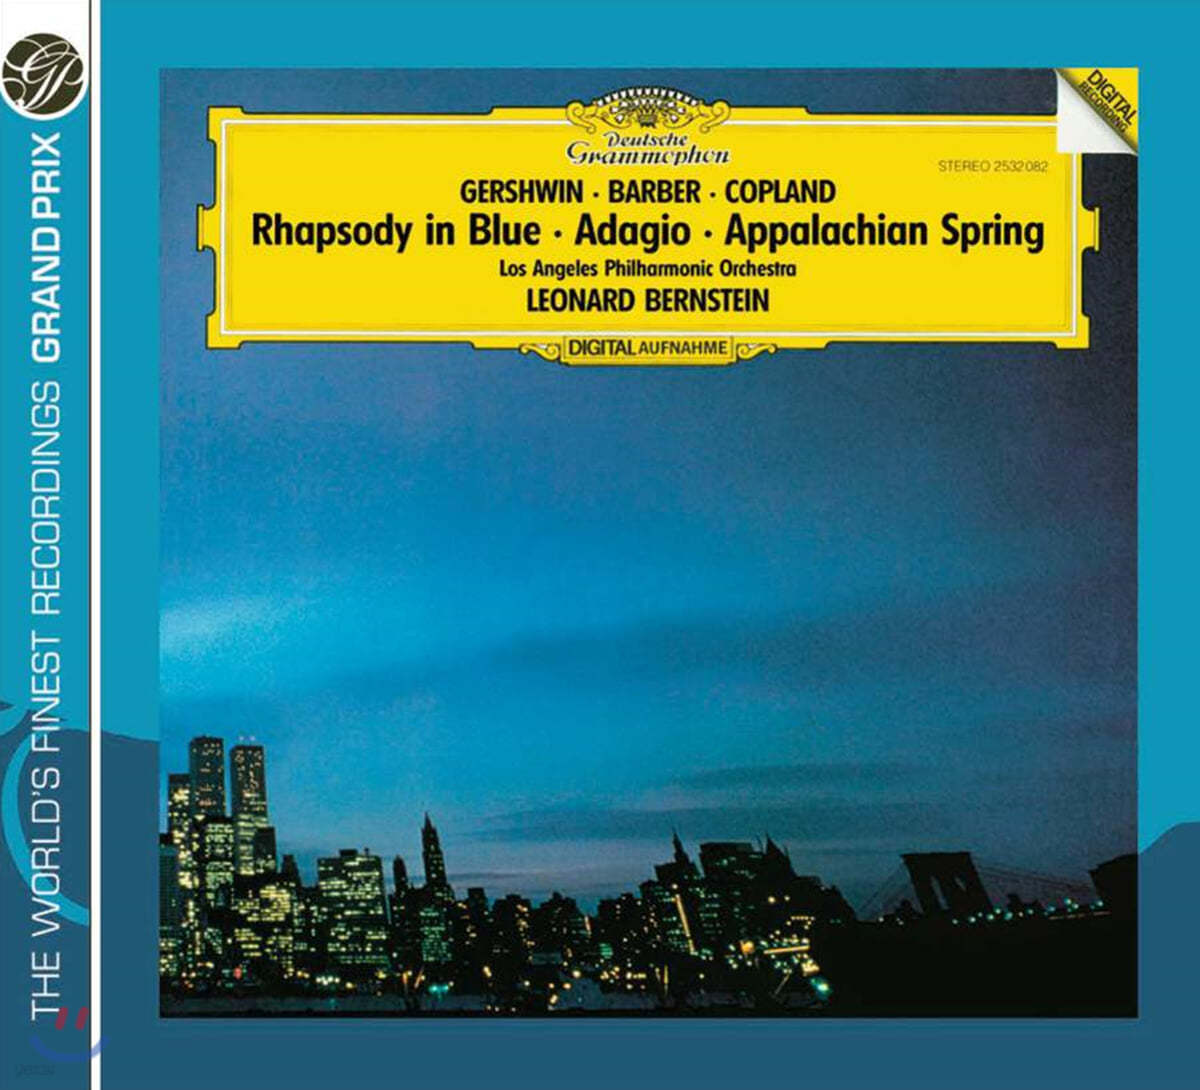 Leonard Bernstein 거슈윈: 랩소디 인 블루 / 코플랜드: 아팔라치아의 봄 (Gershwin: Rhapsody in Blue / Copland: Appalachian Spring)